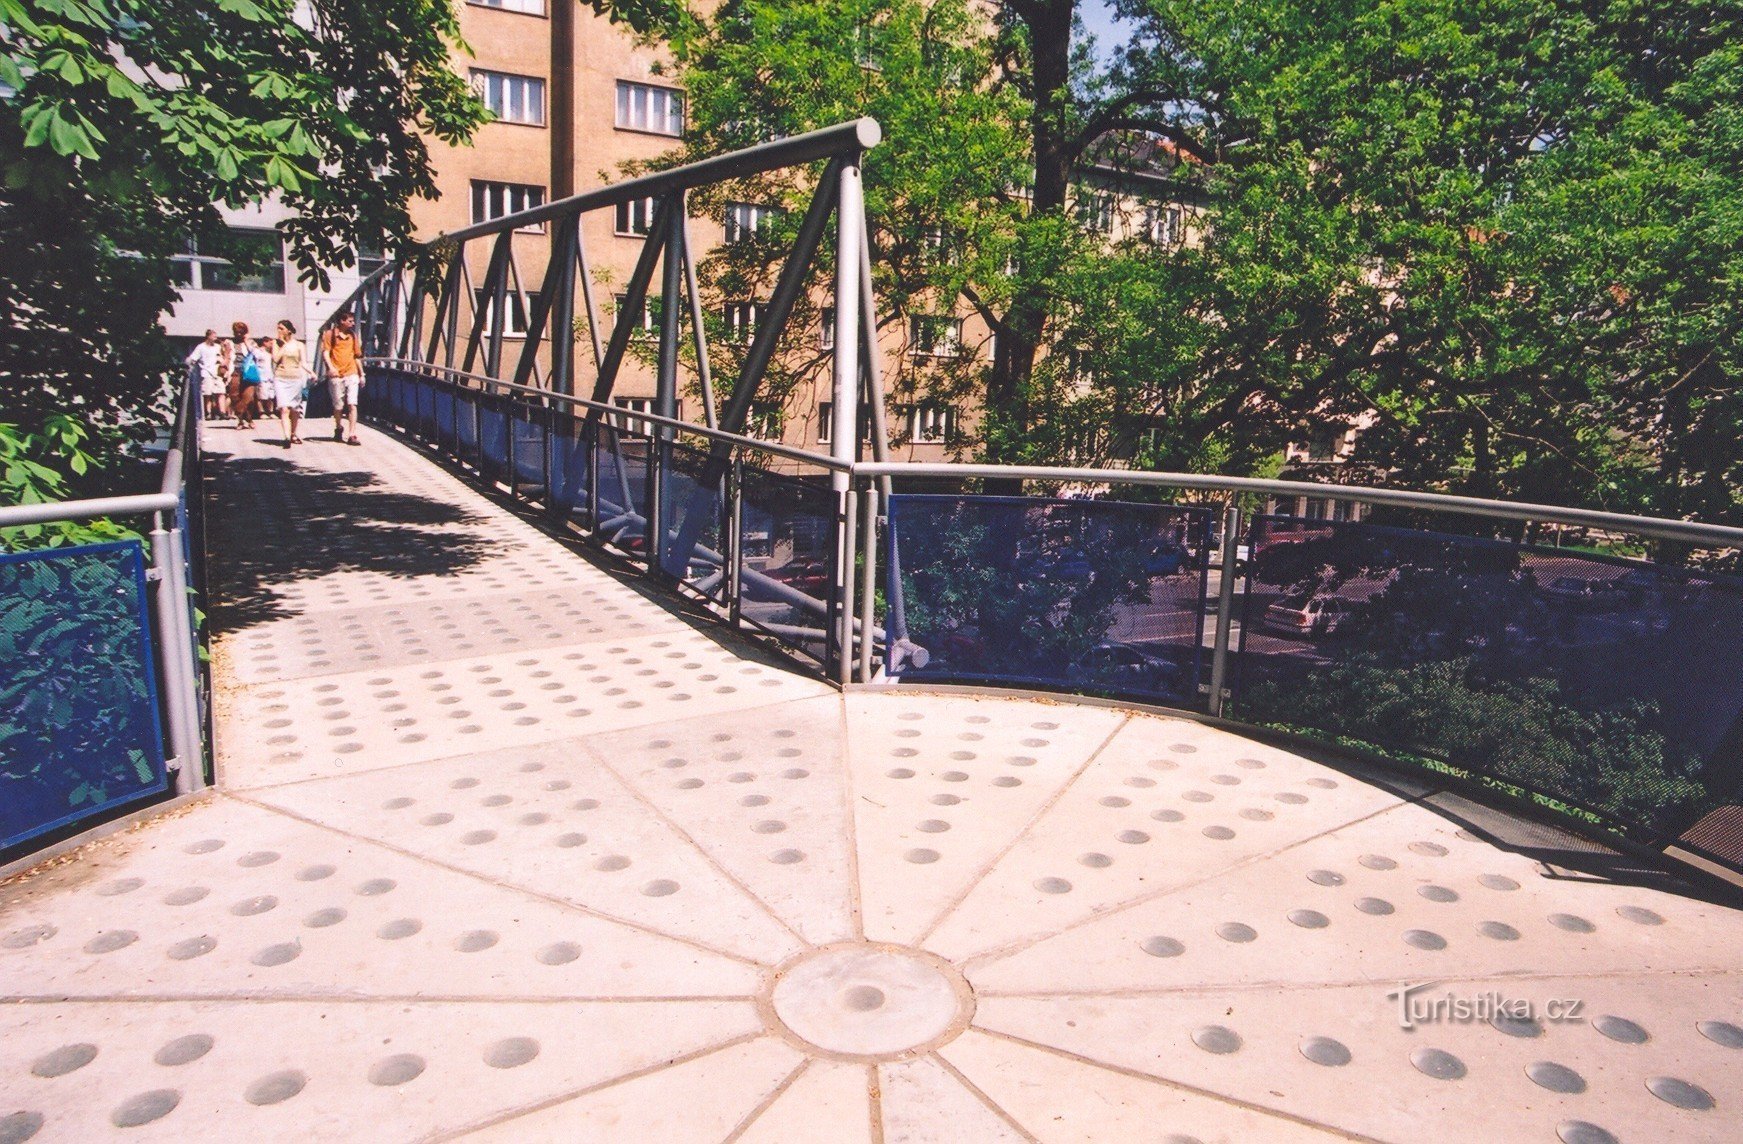 Brno-Koliště - footbridge